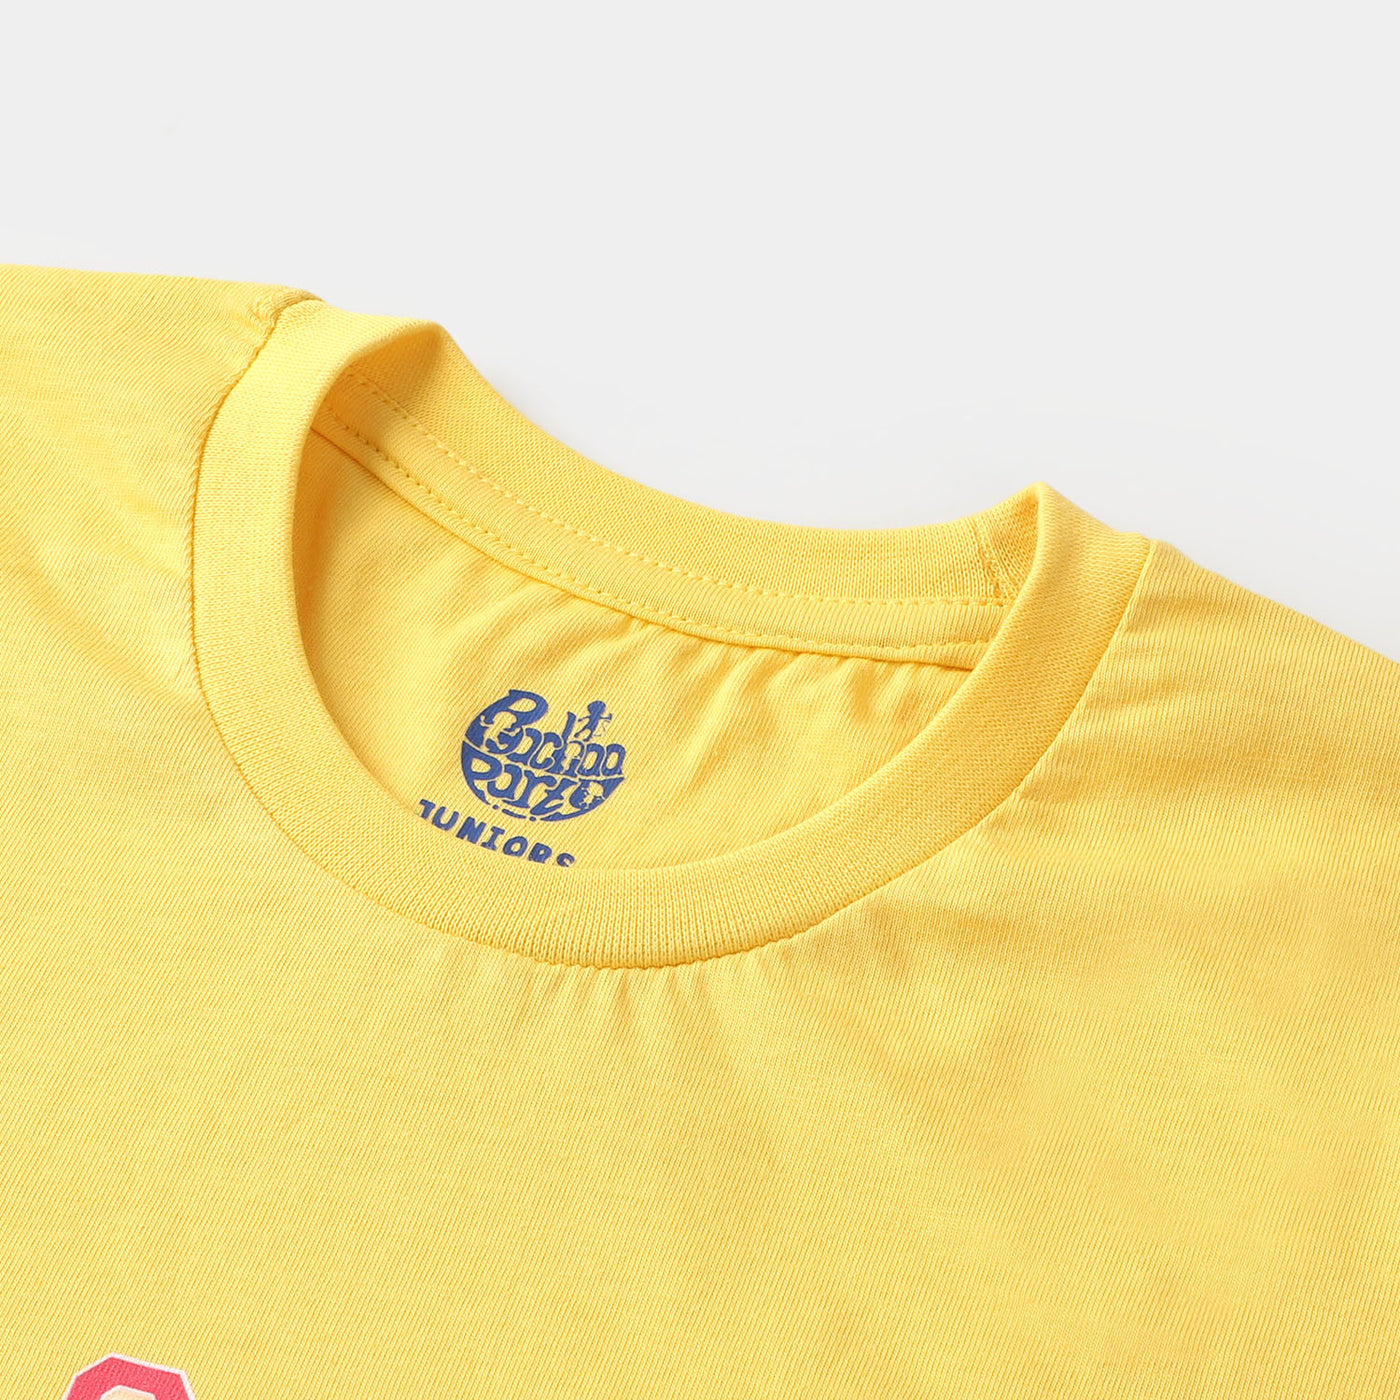 Girls T-Shirt -Yellow